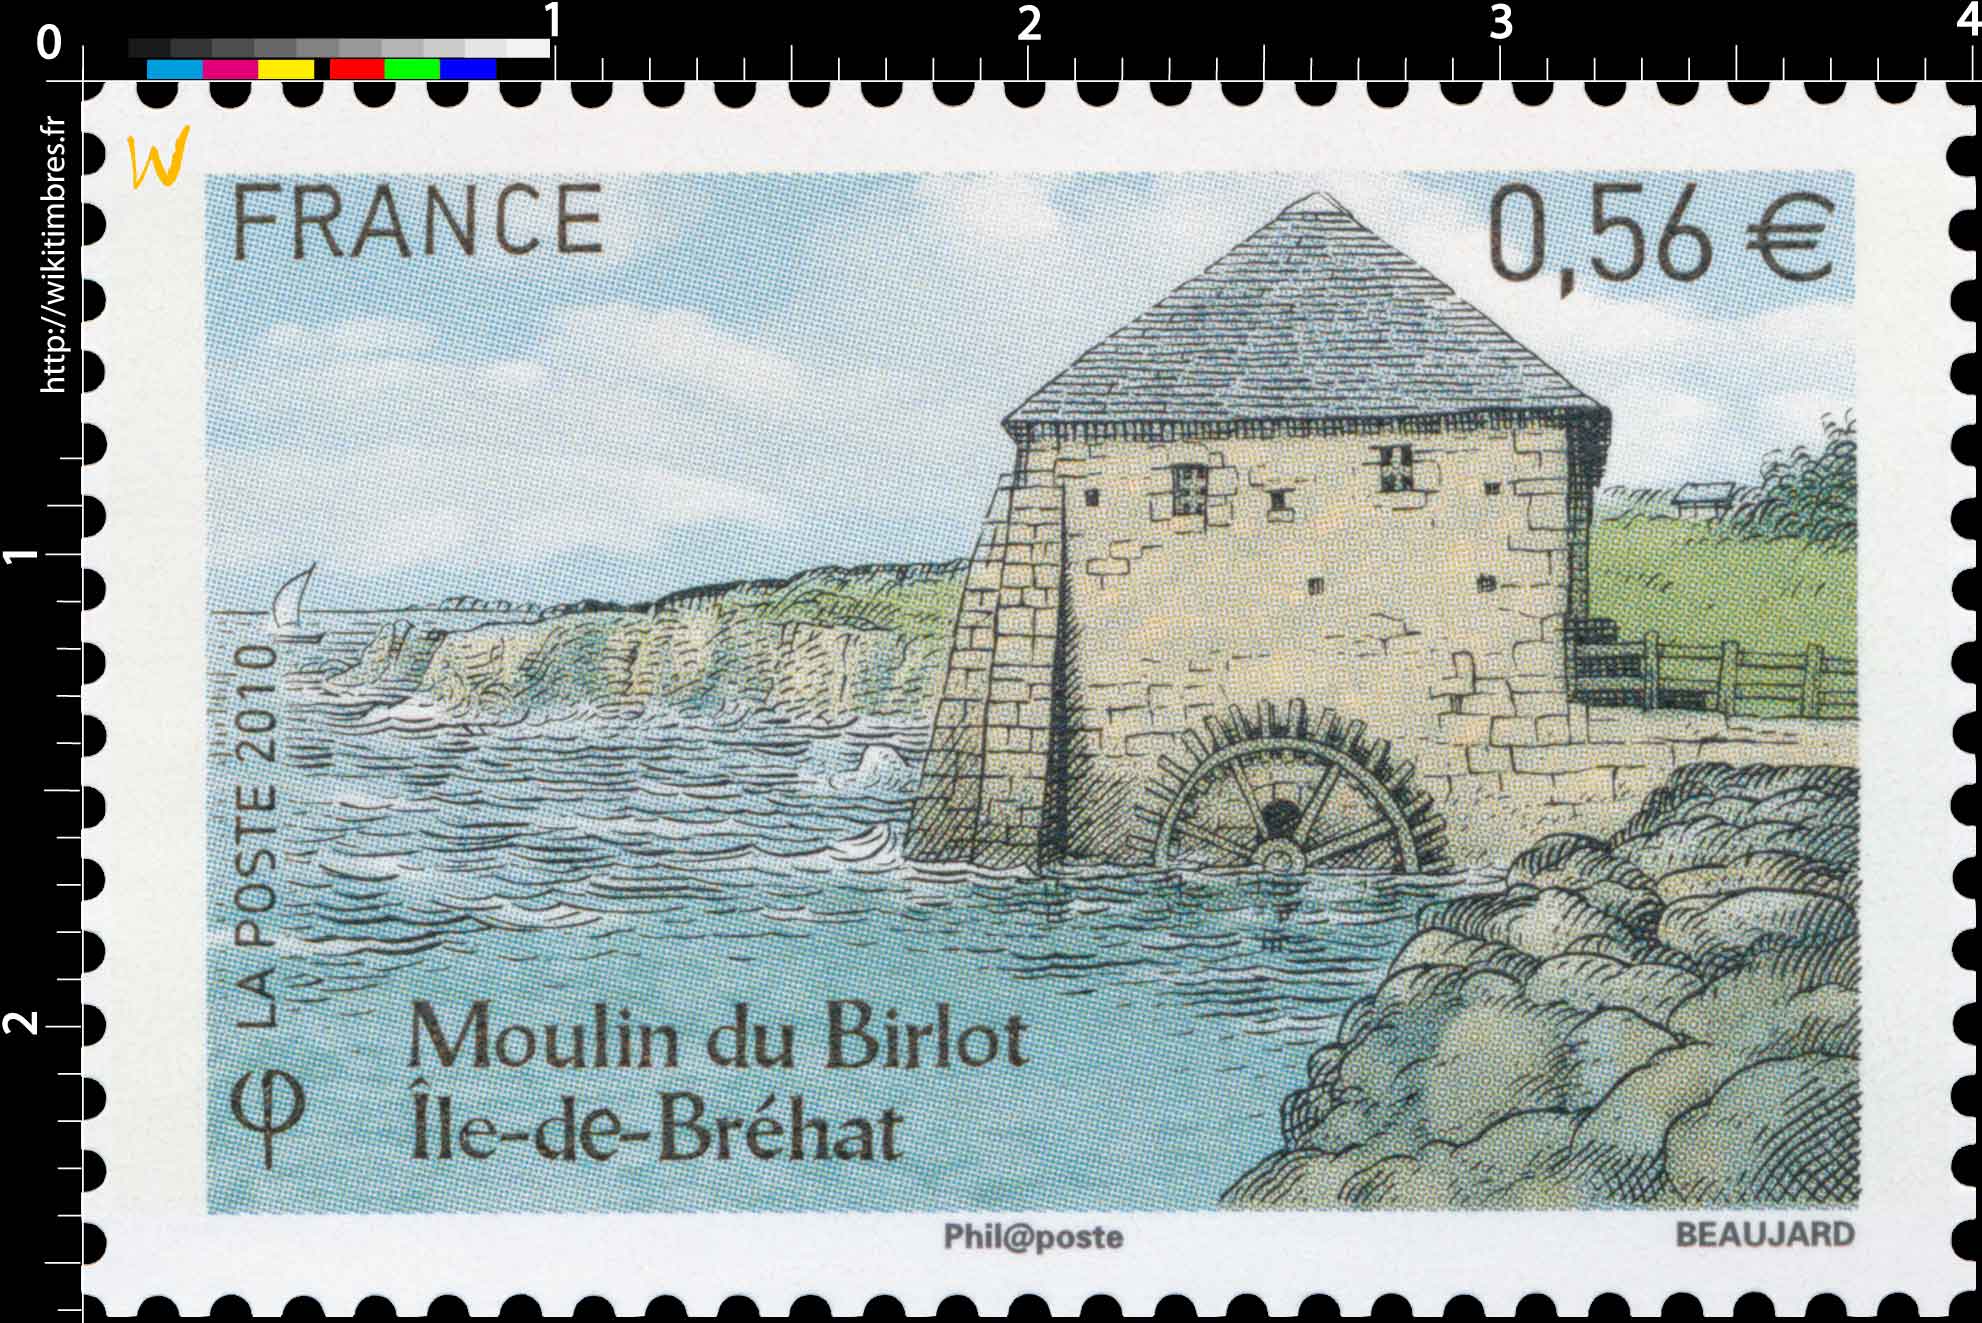 2010 Moulin du Birlot Île-de-Bréhat